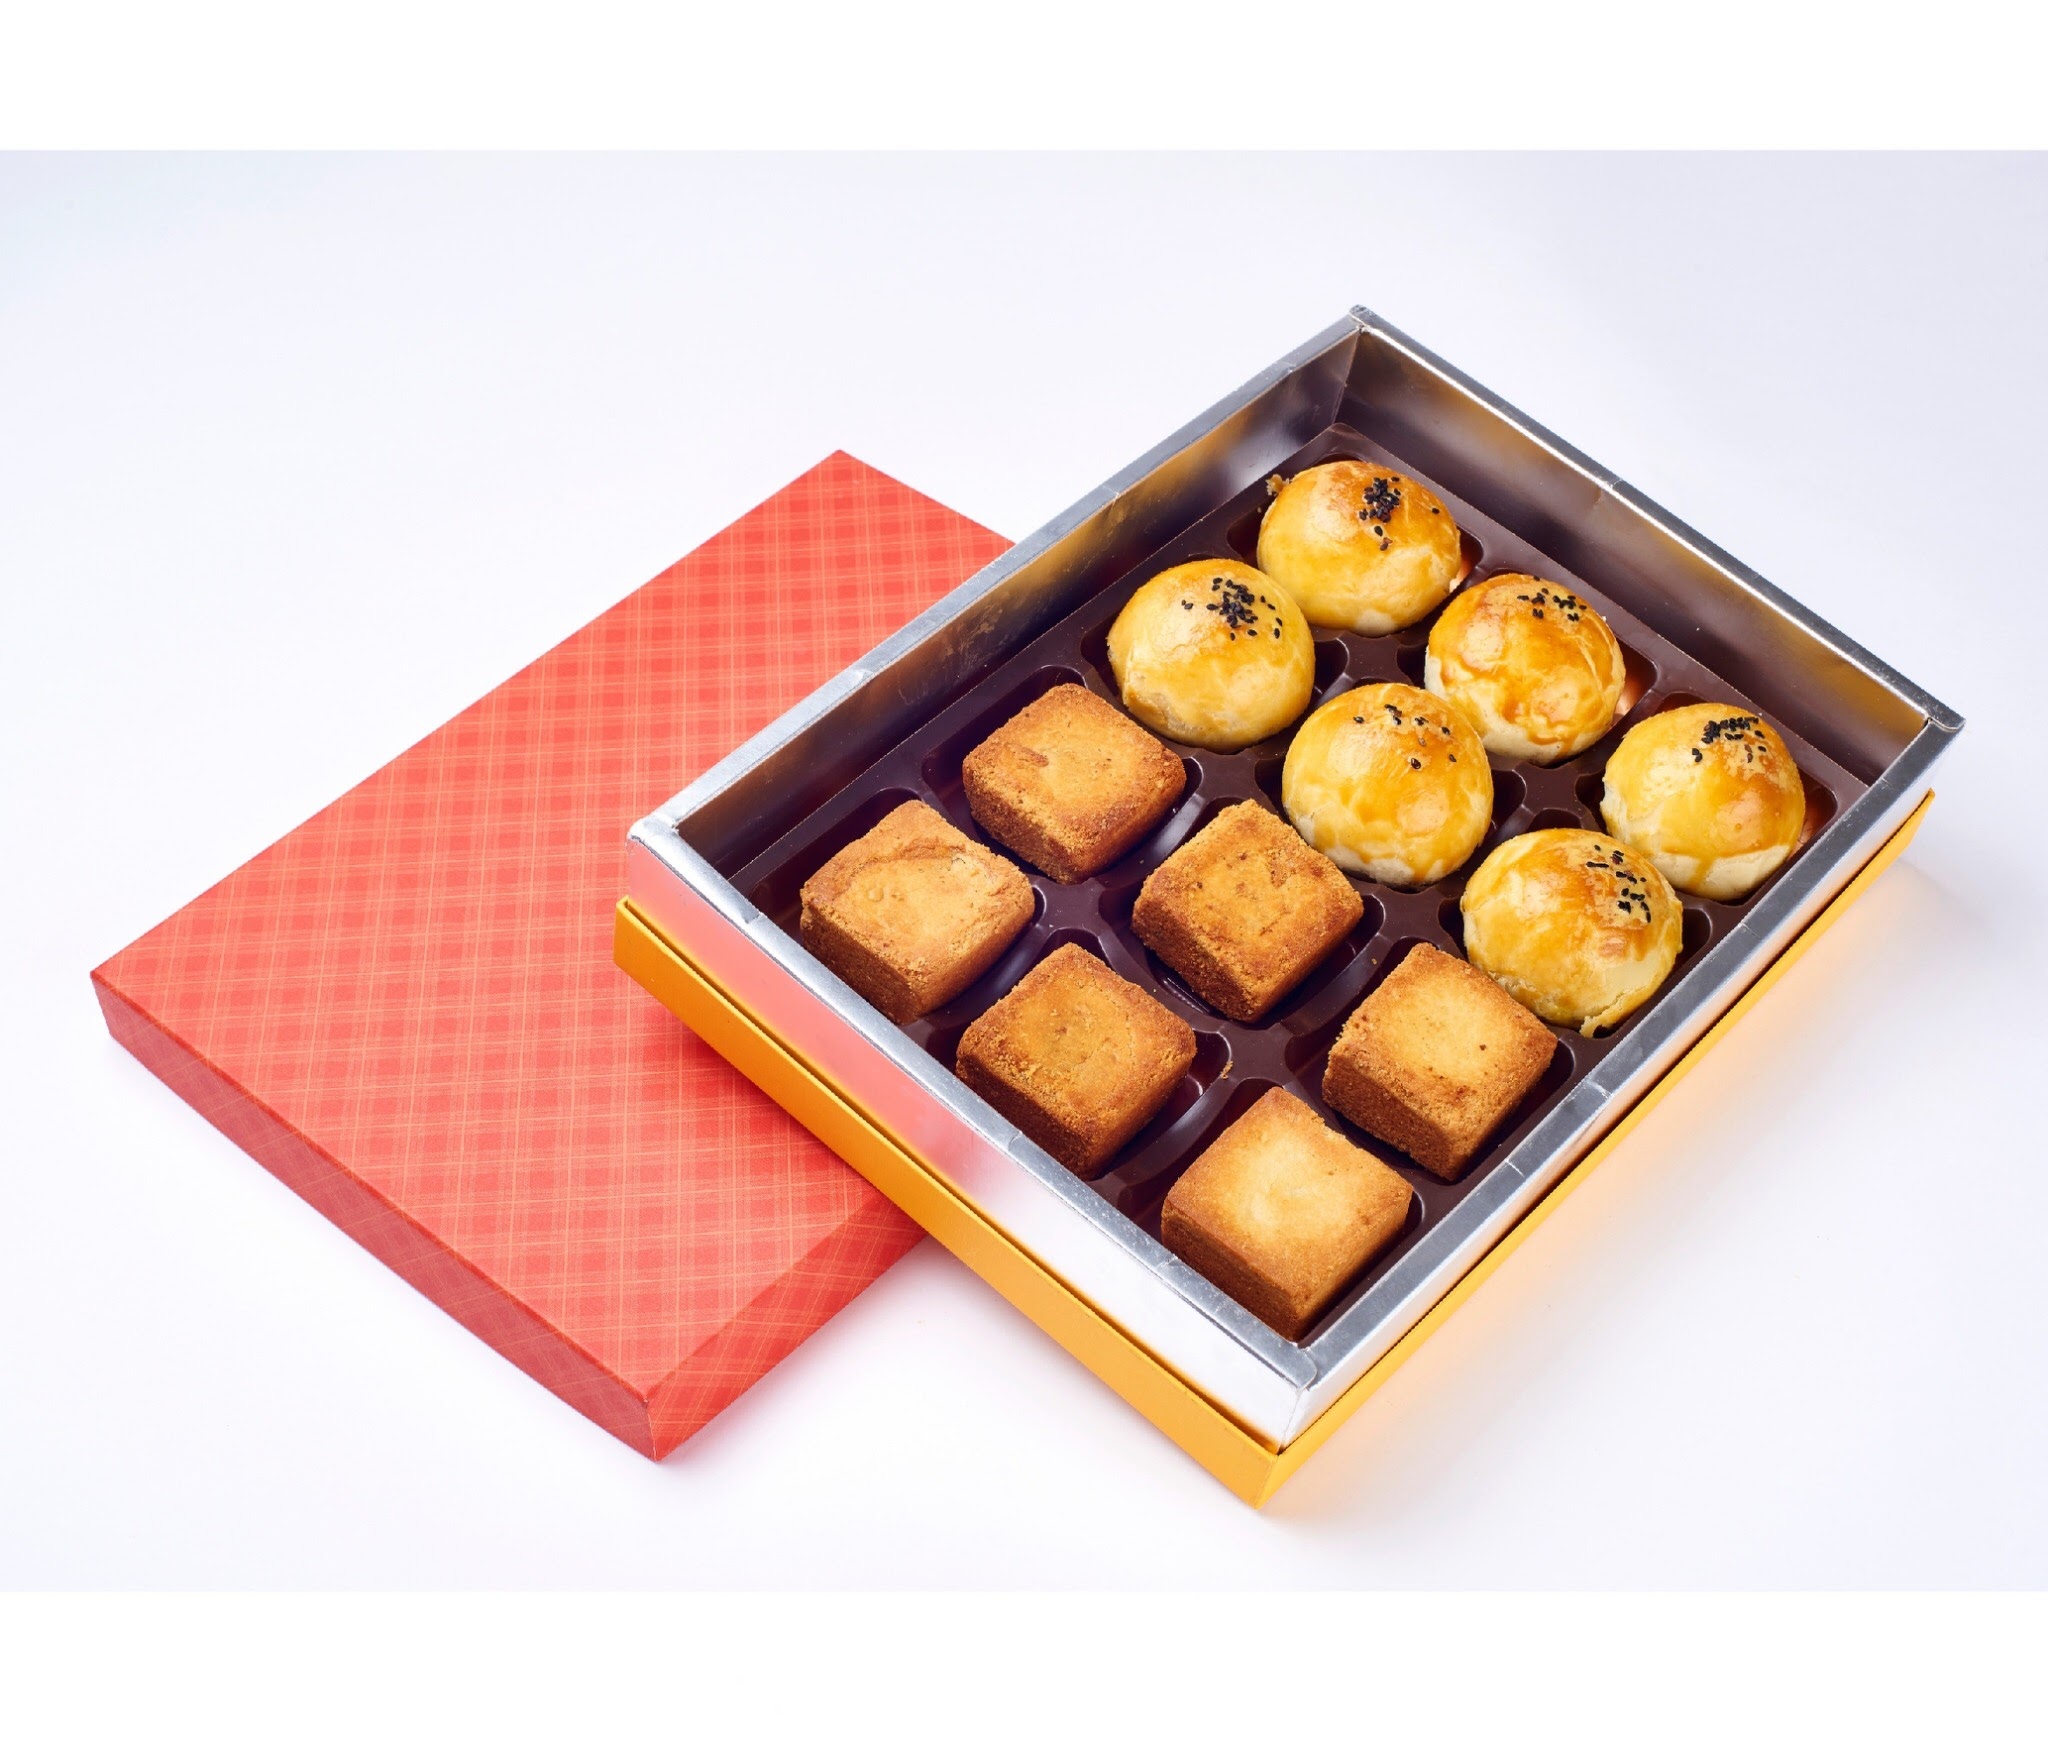 鳳黃綜合禮盒(12入)，產品介紹鳳梨酥6入，蛋黃酥6入。單入包裝